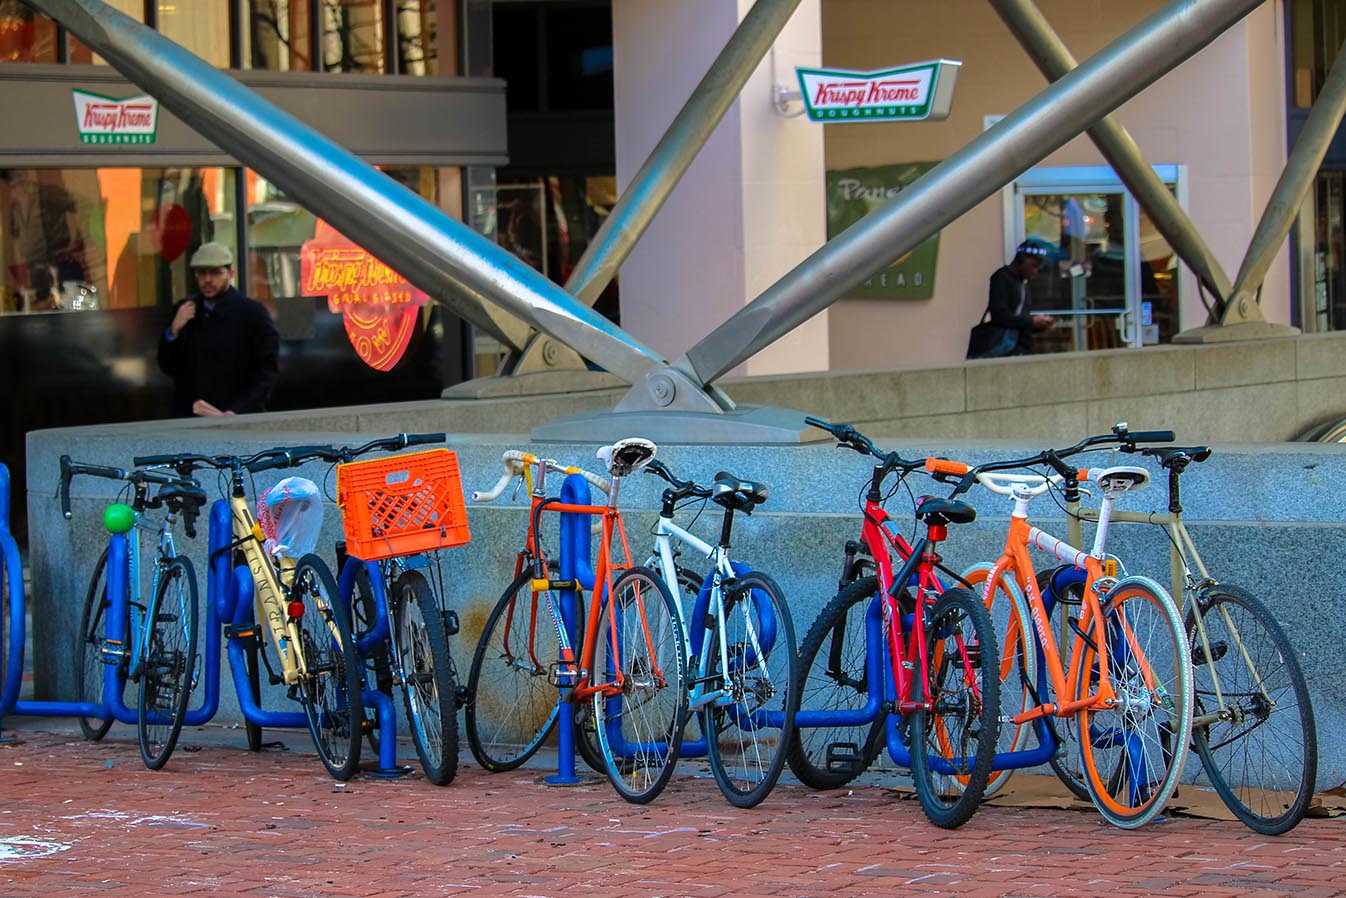 Bikes parked in Dupont Circle, Washington, D.C.